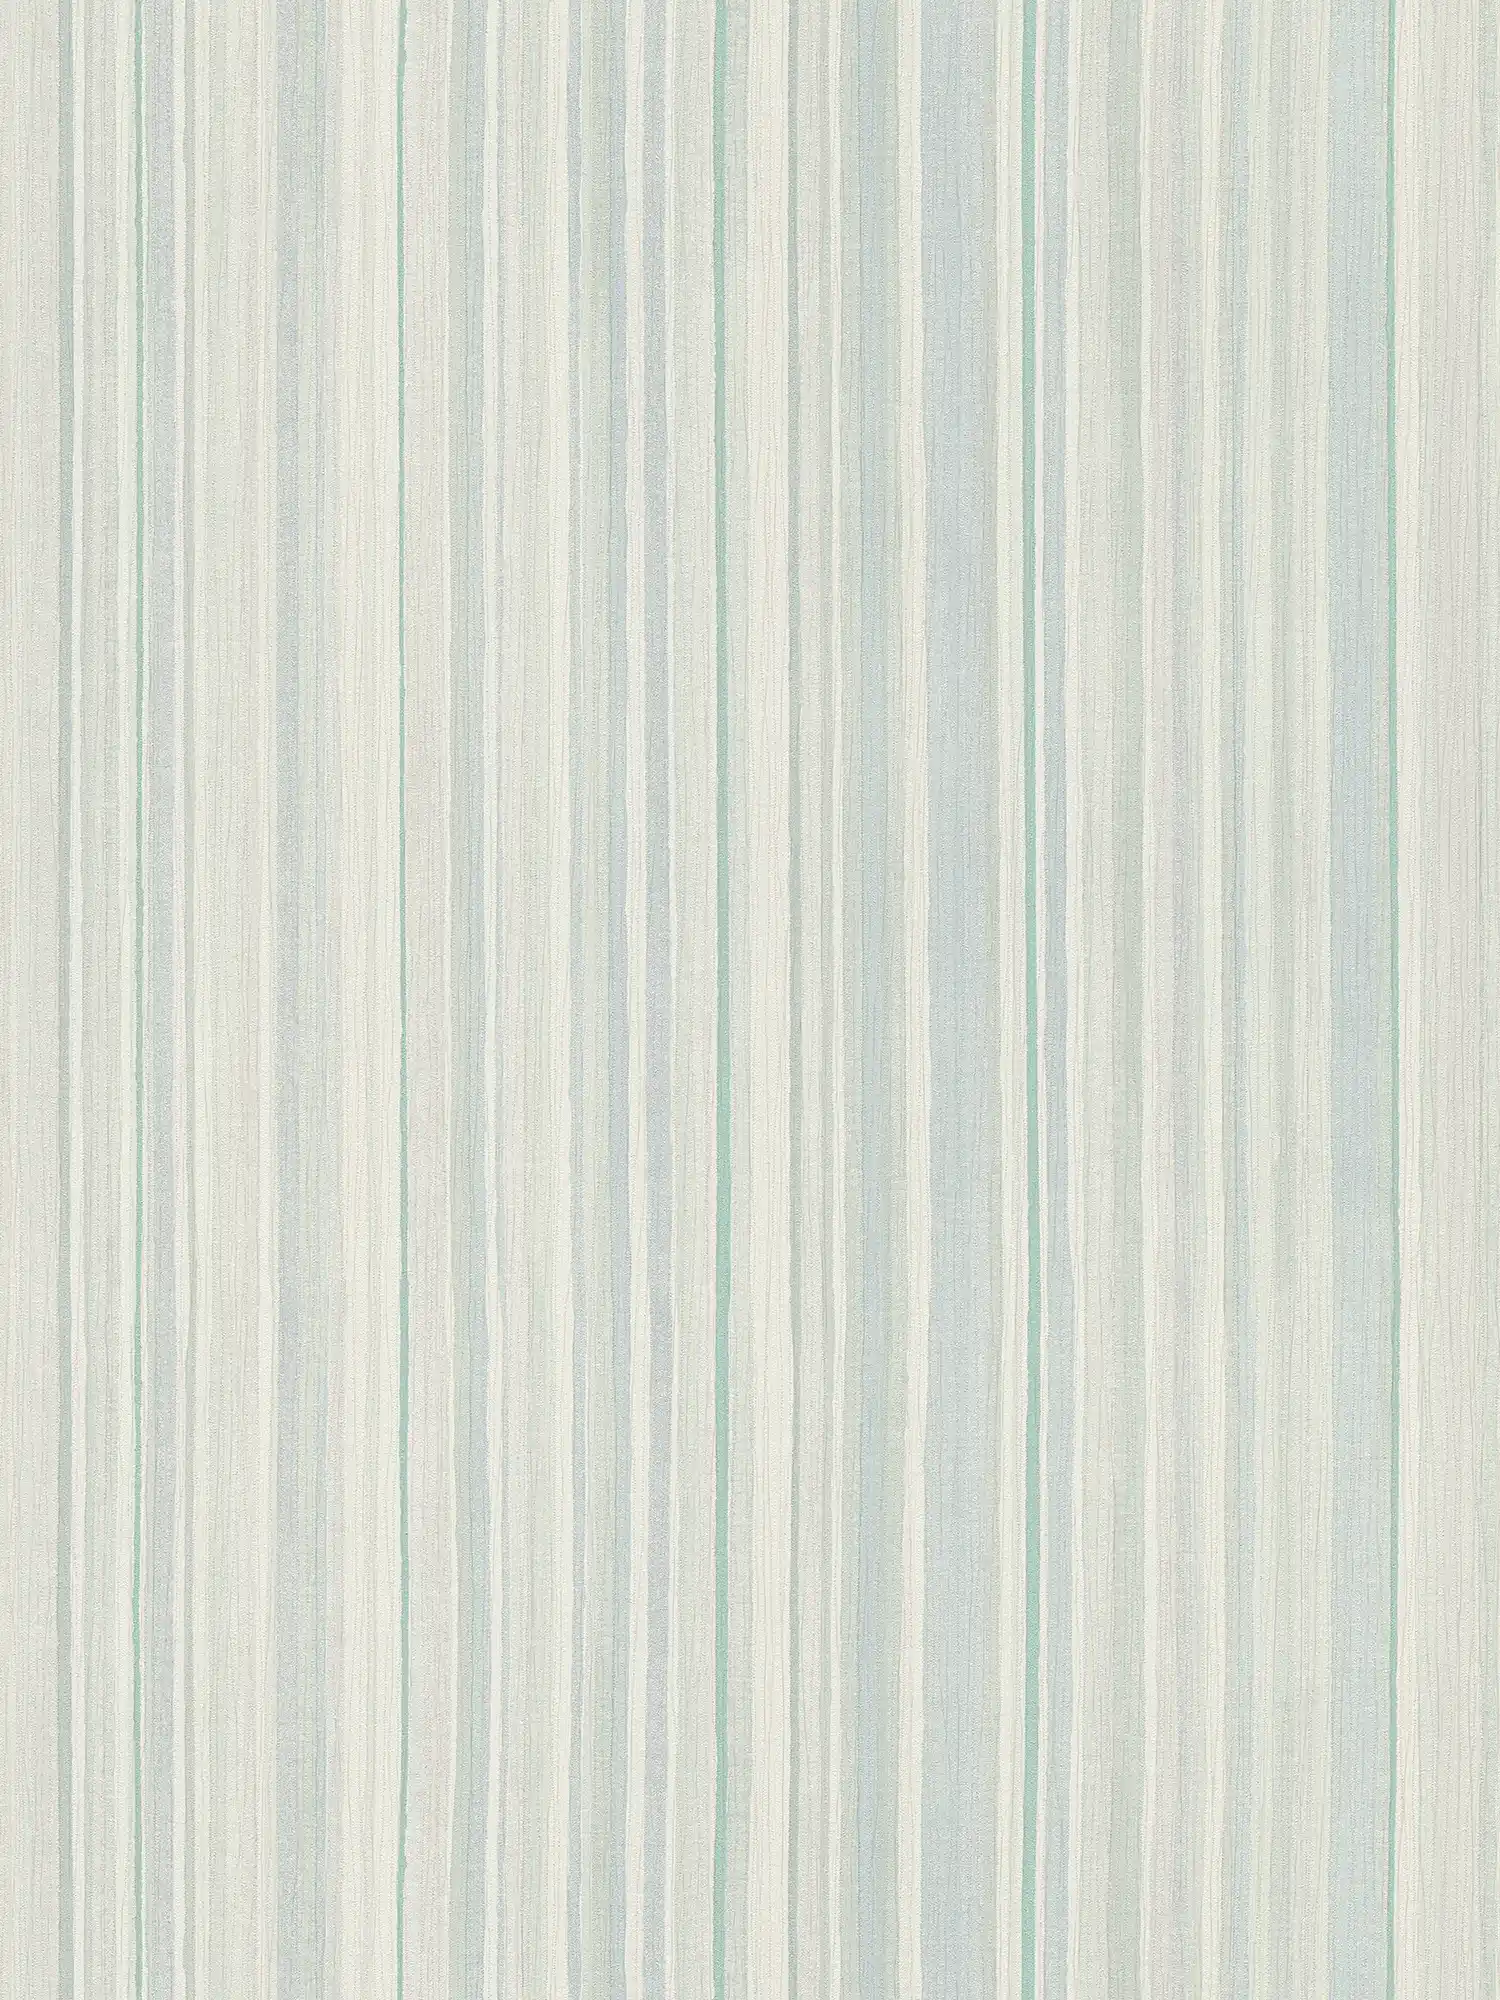 Gestreifte Tapete mit Linienmuster – Blau, Grün, Grau
